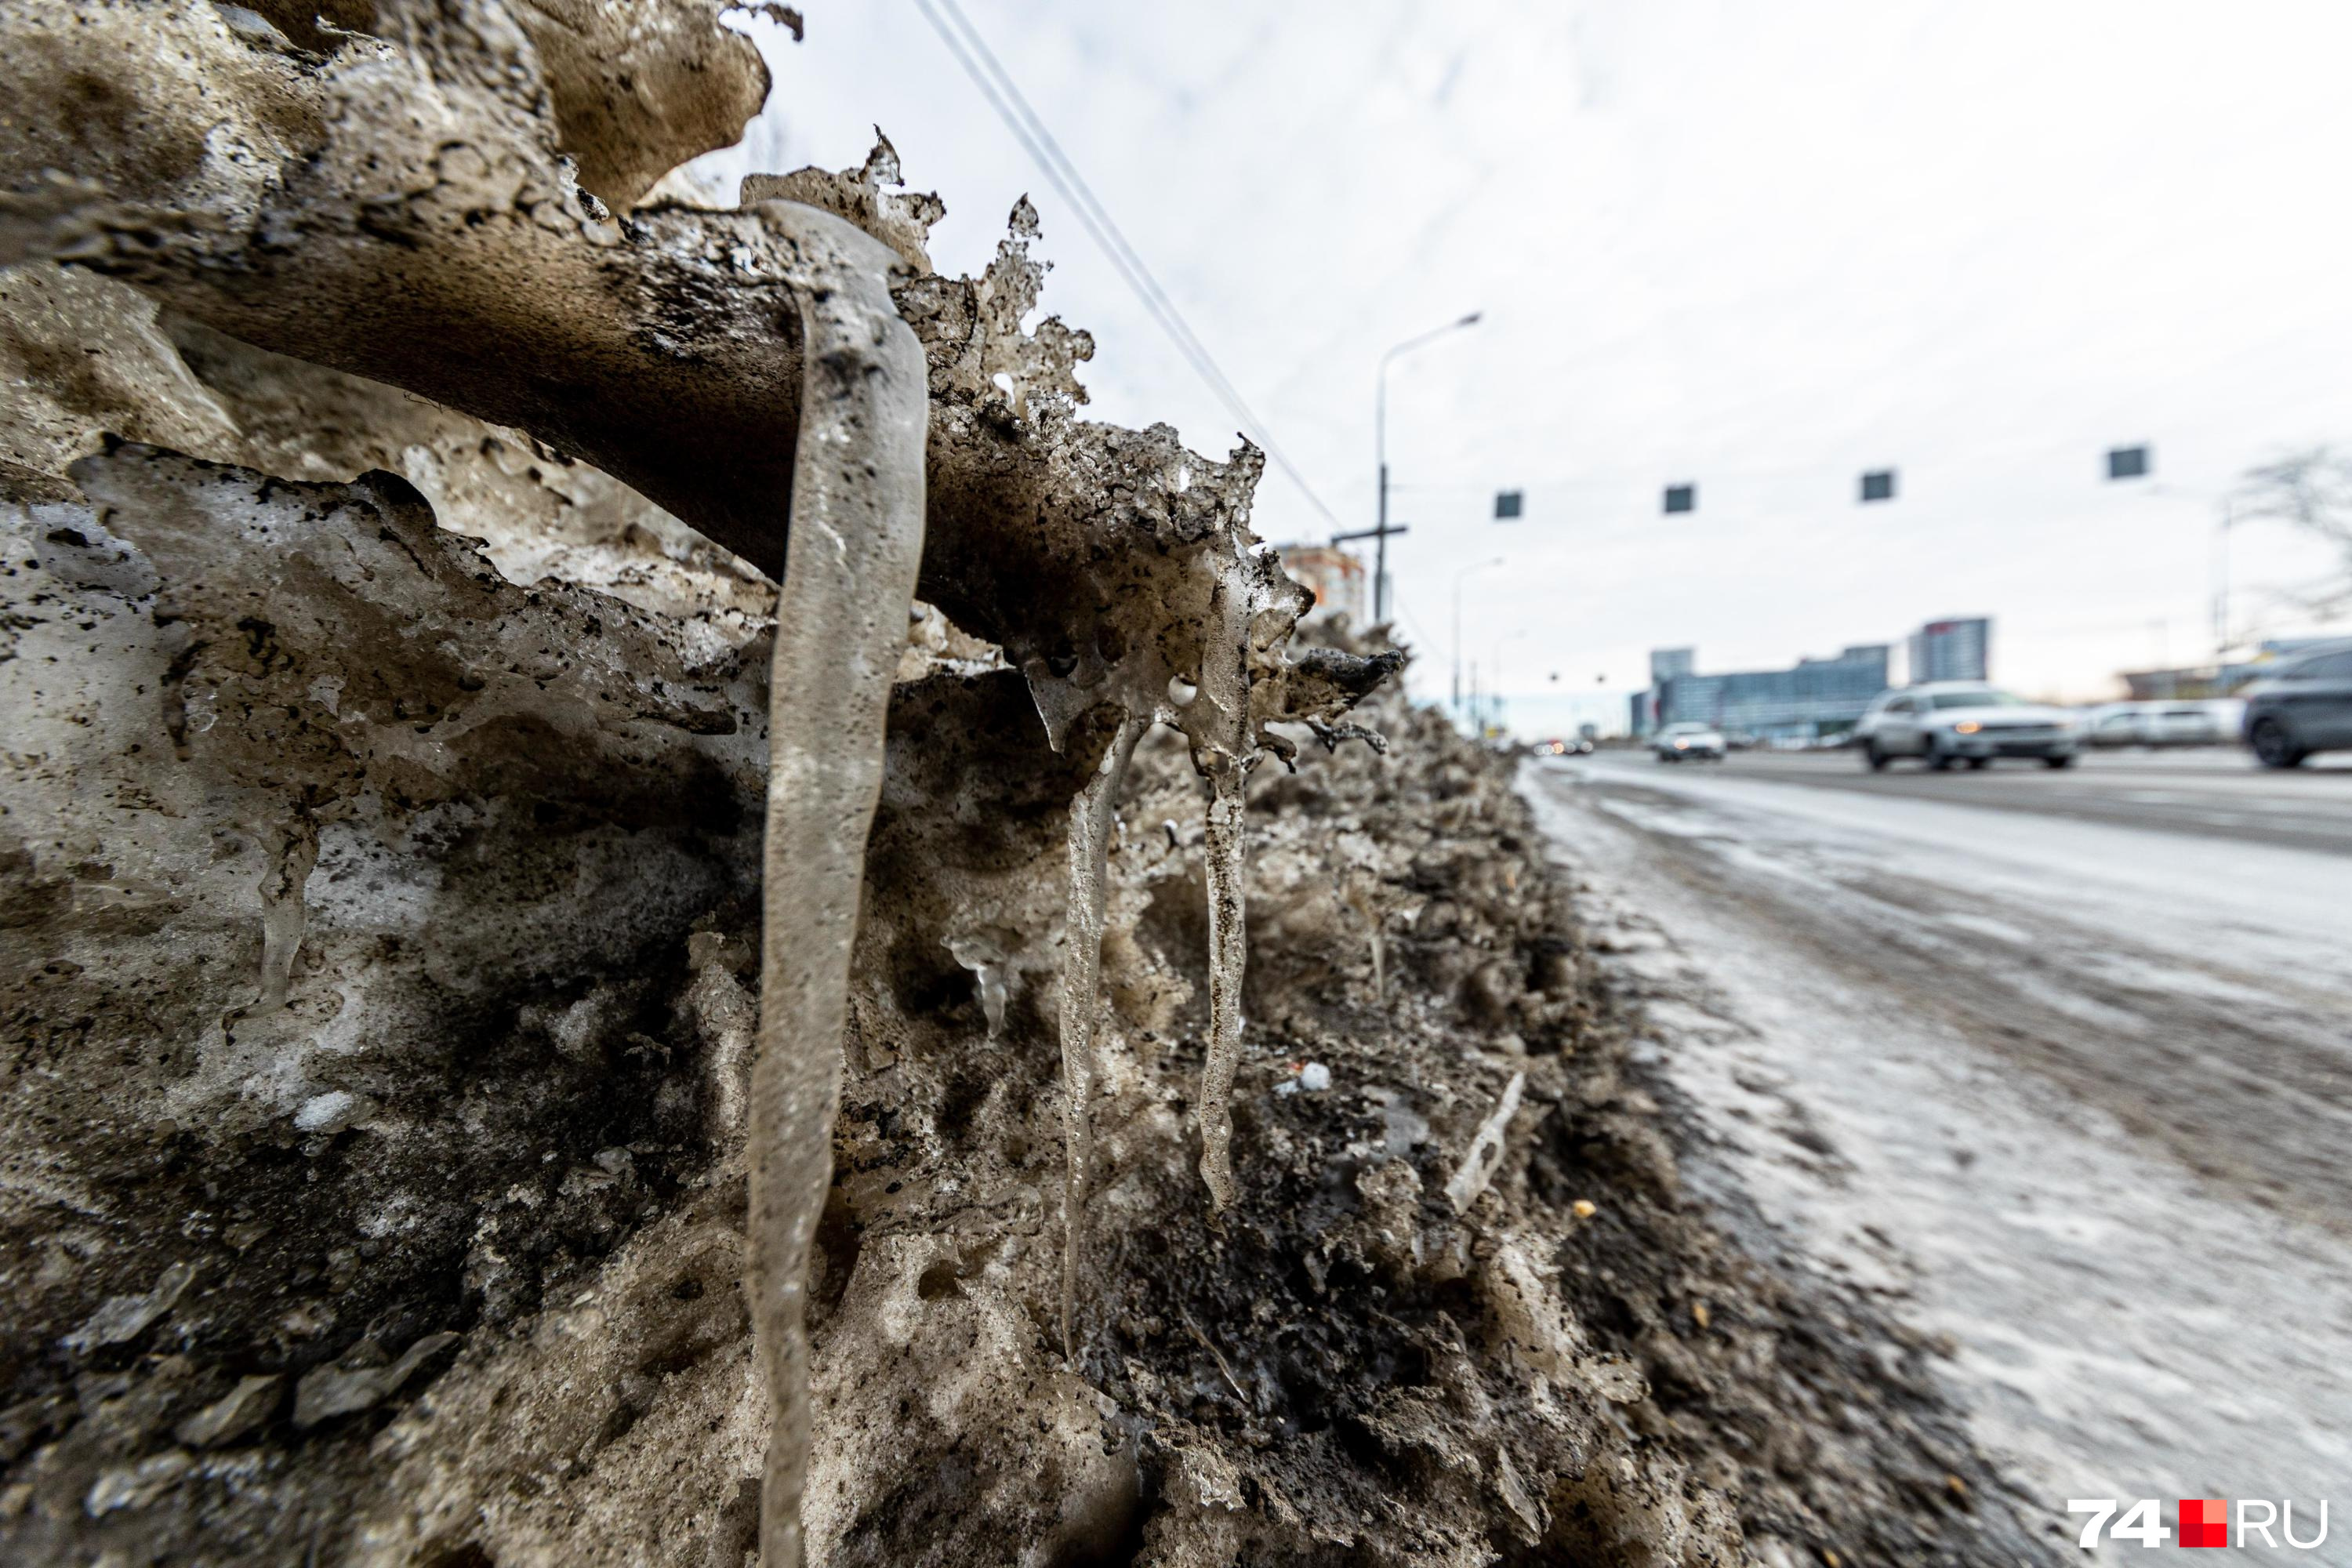 Администрация Читы снова сделала недостаточно для уборки дорог от снега